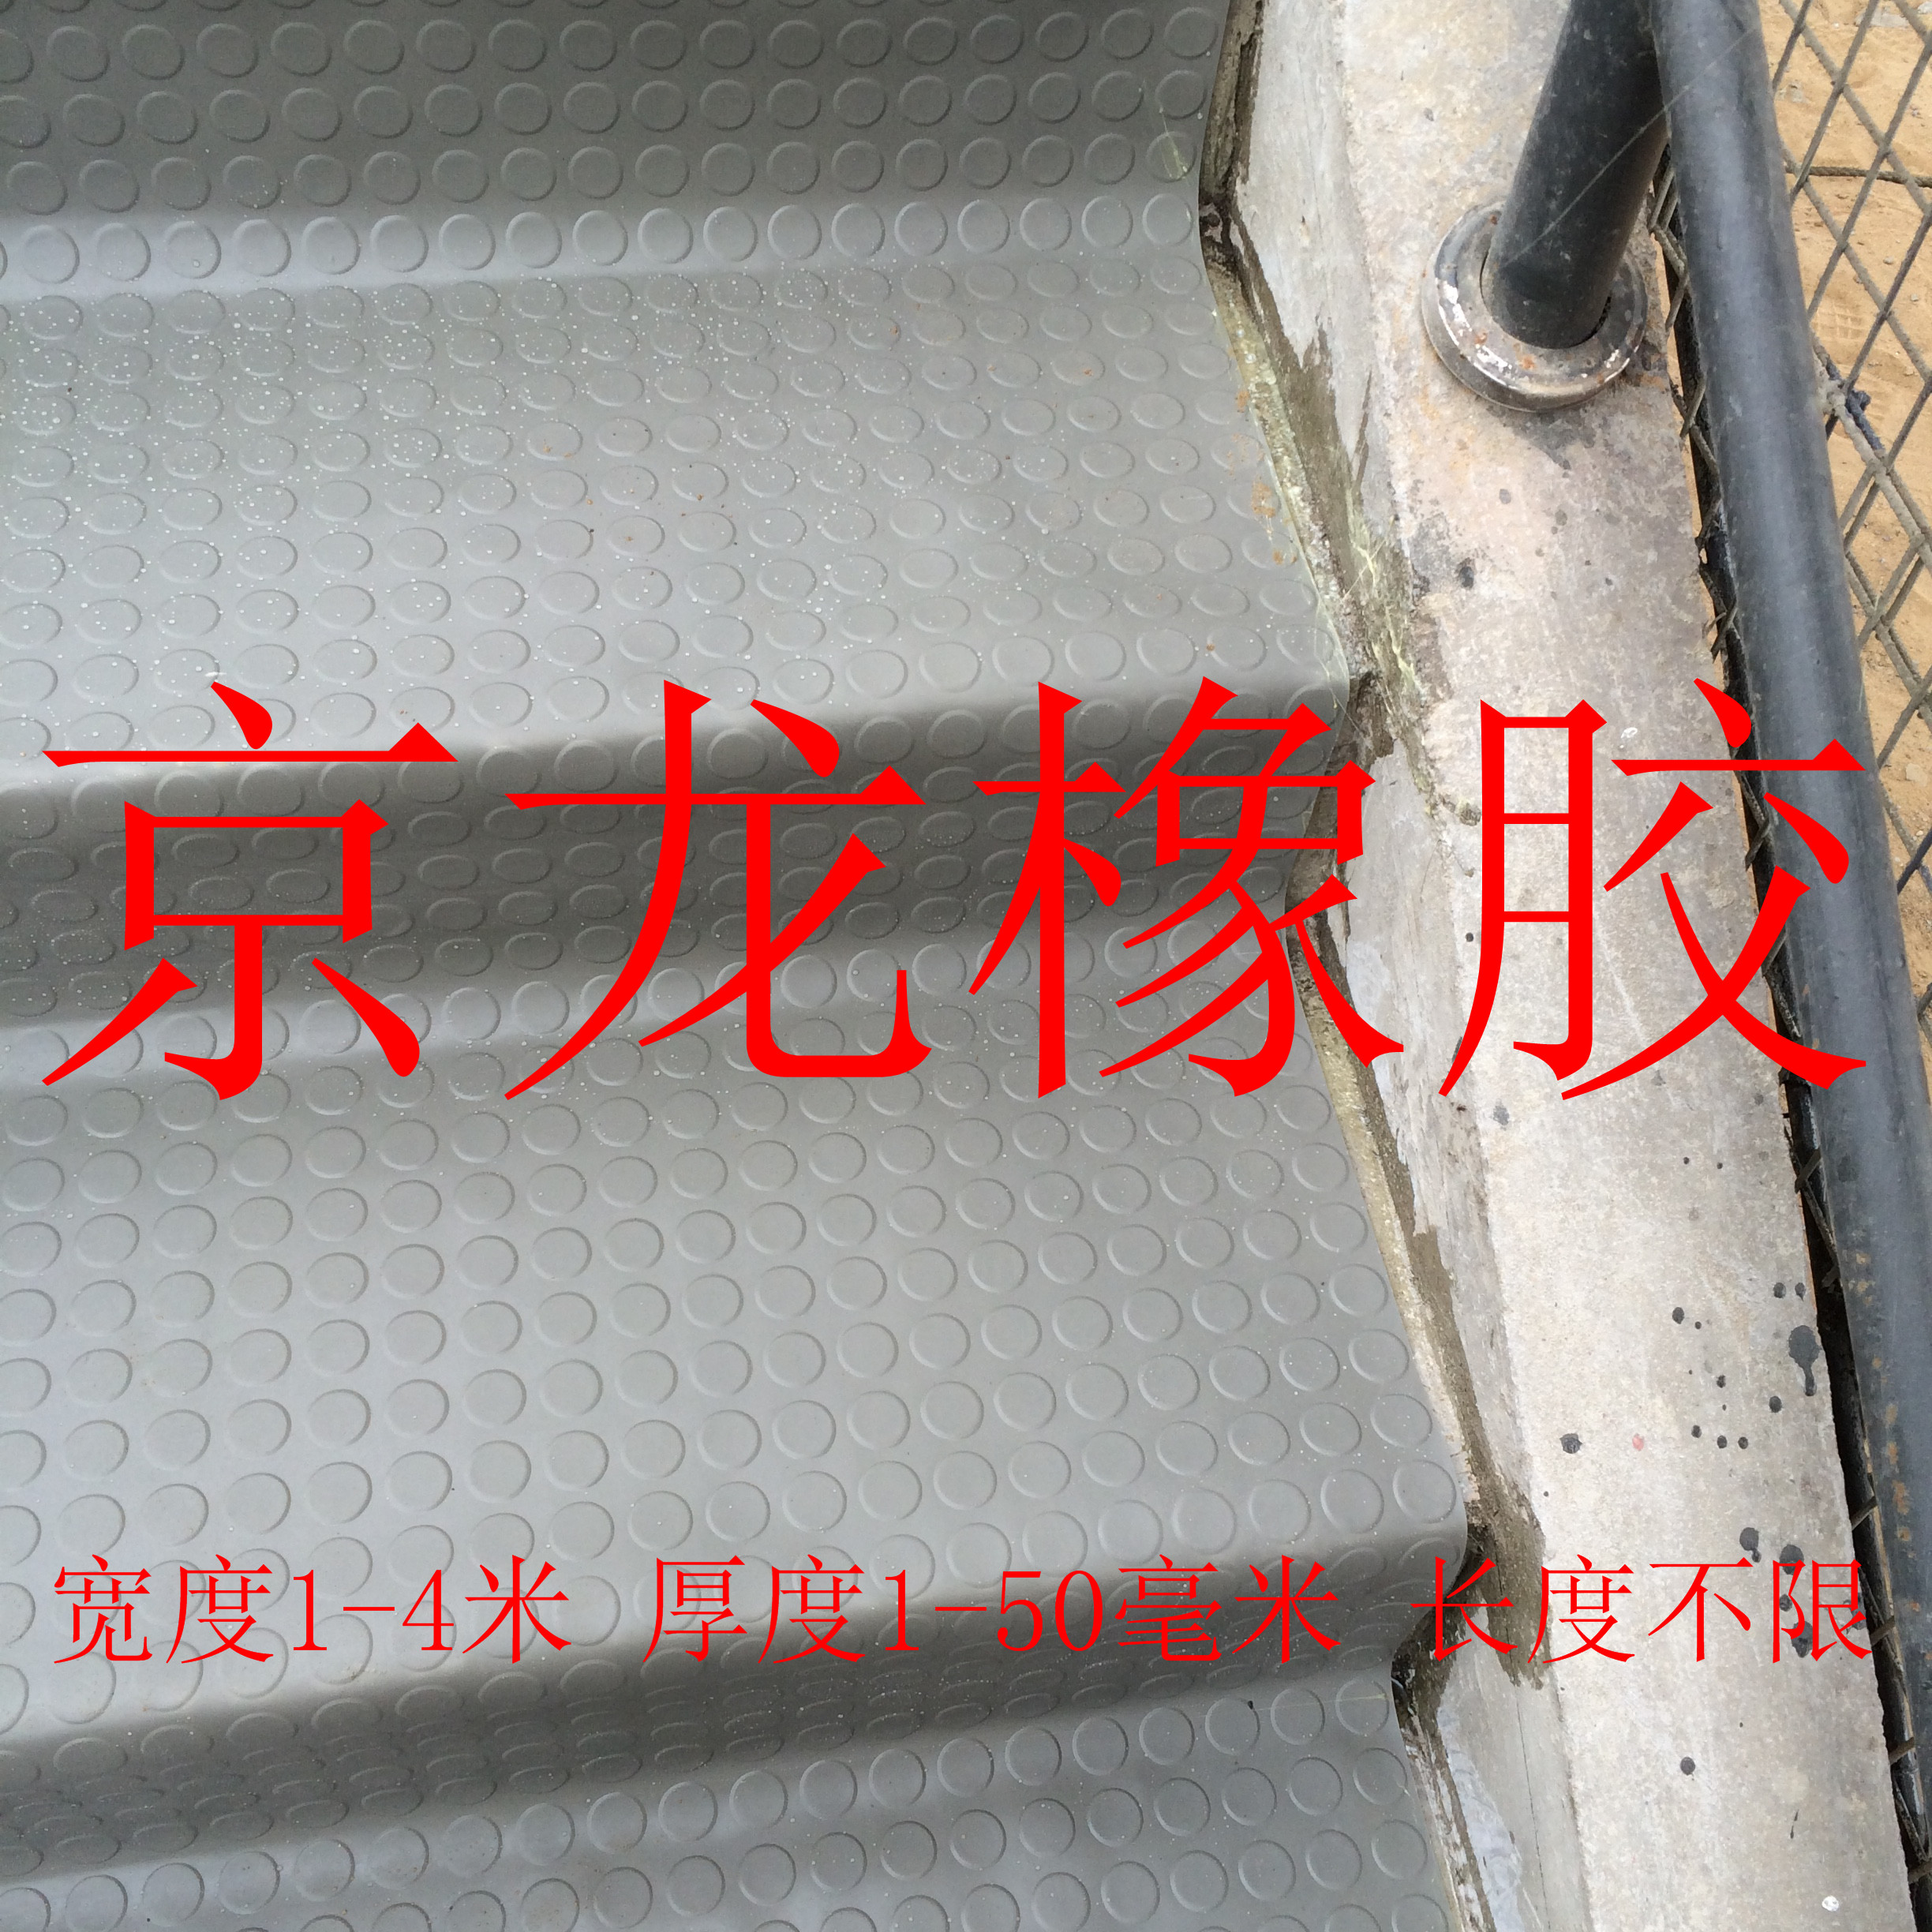 圆扣防滑橡胶板灰色防滑橡胶板河间市京龙建筑材料有限公司图片